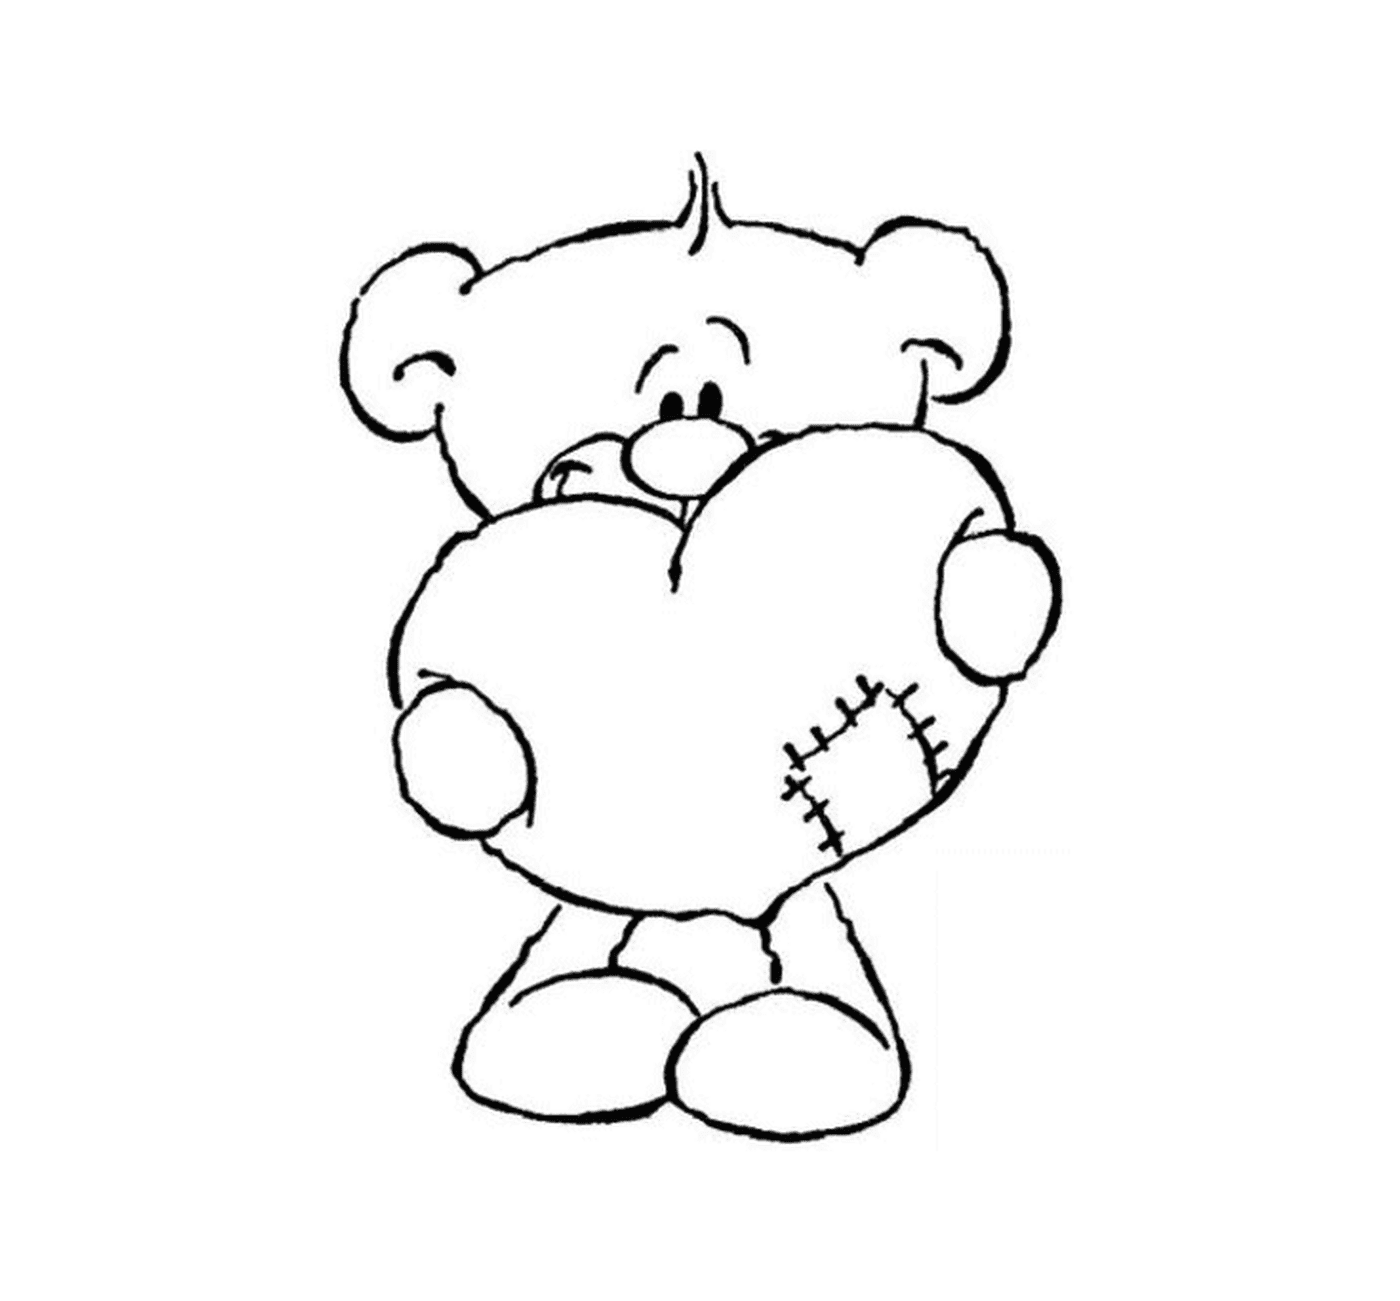  Медвежонок держит сердце в руках 